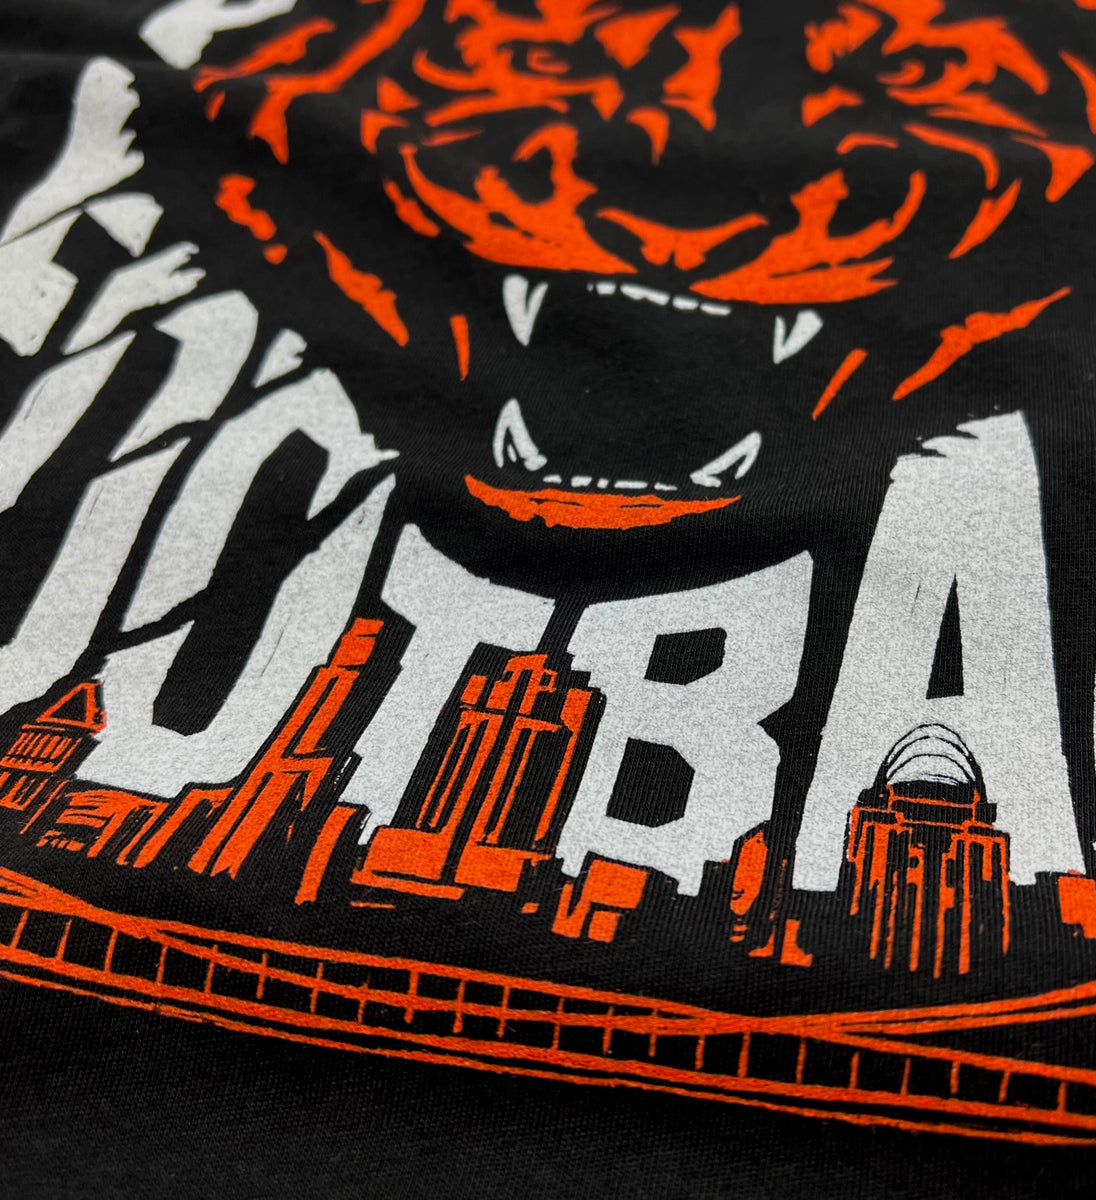 Cincinnati Football Roar T shirt